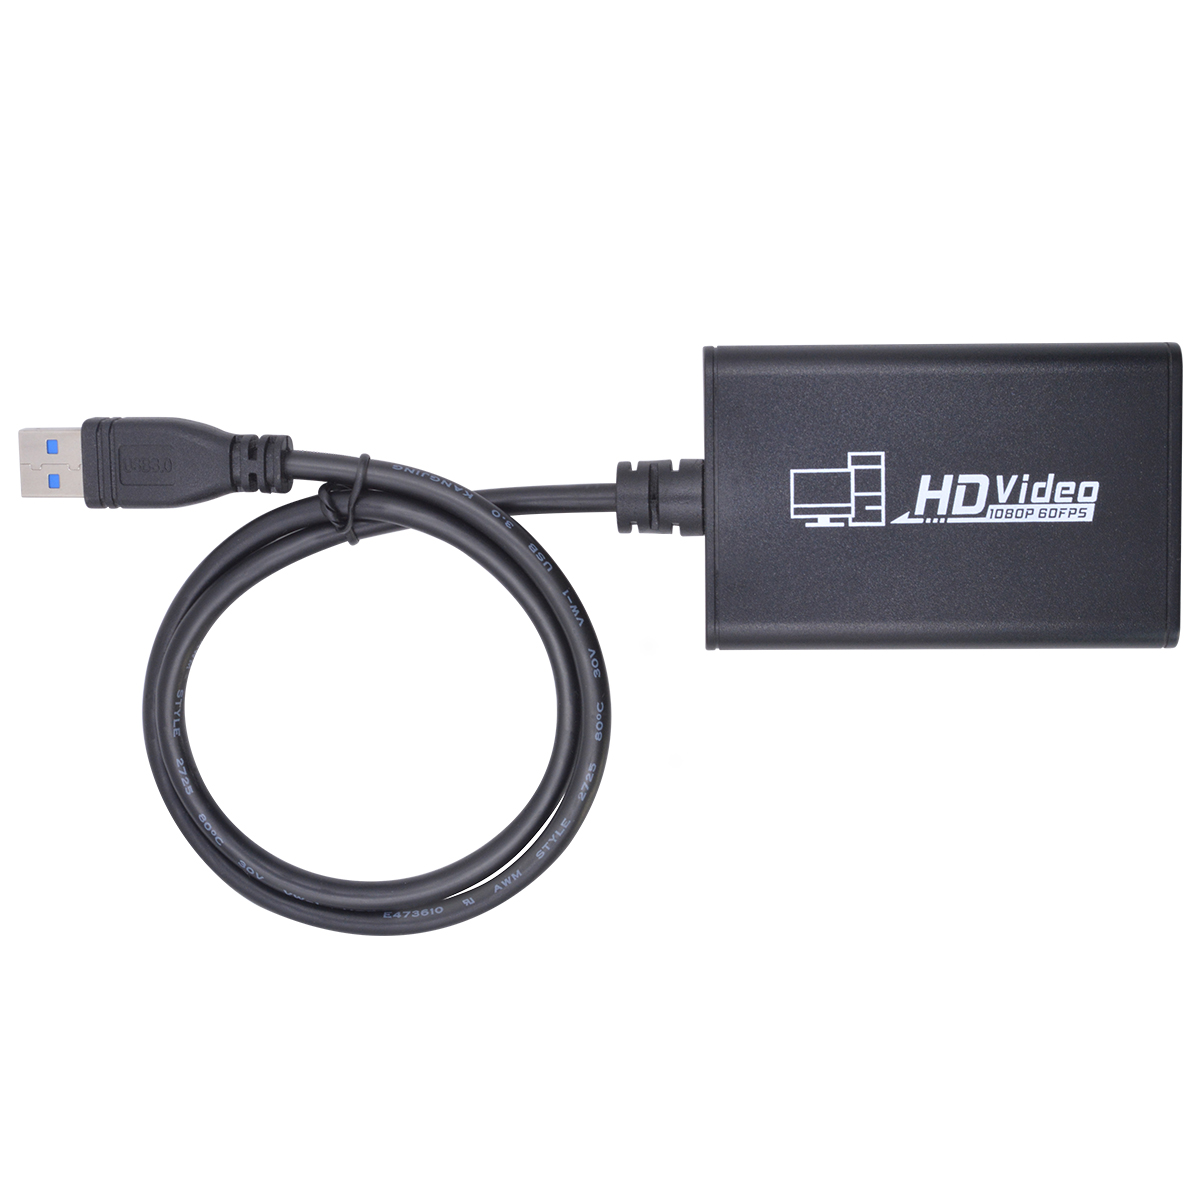 USB 3.0 HDM 1080P 60fpsI HD Video Capture Card